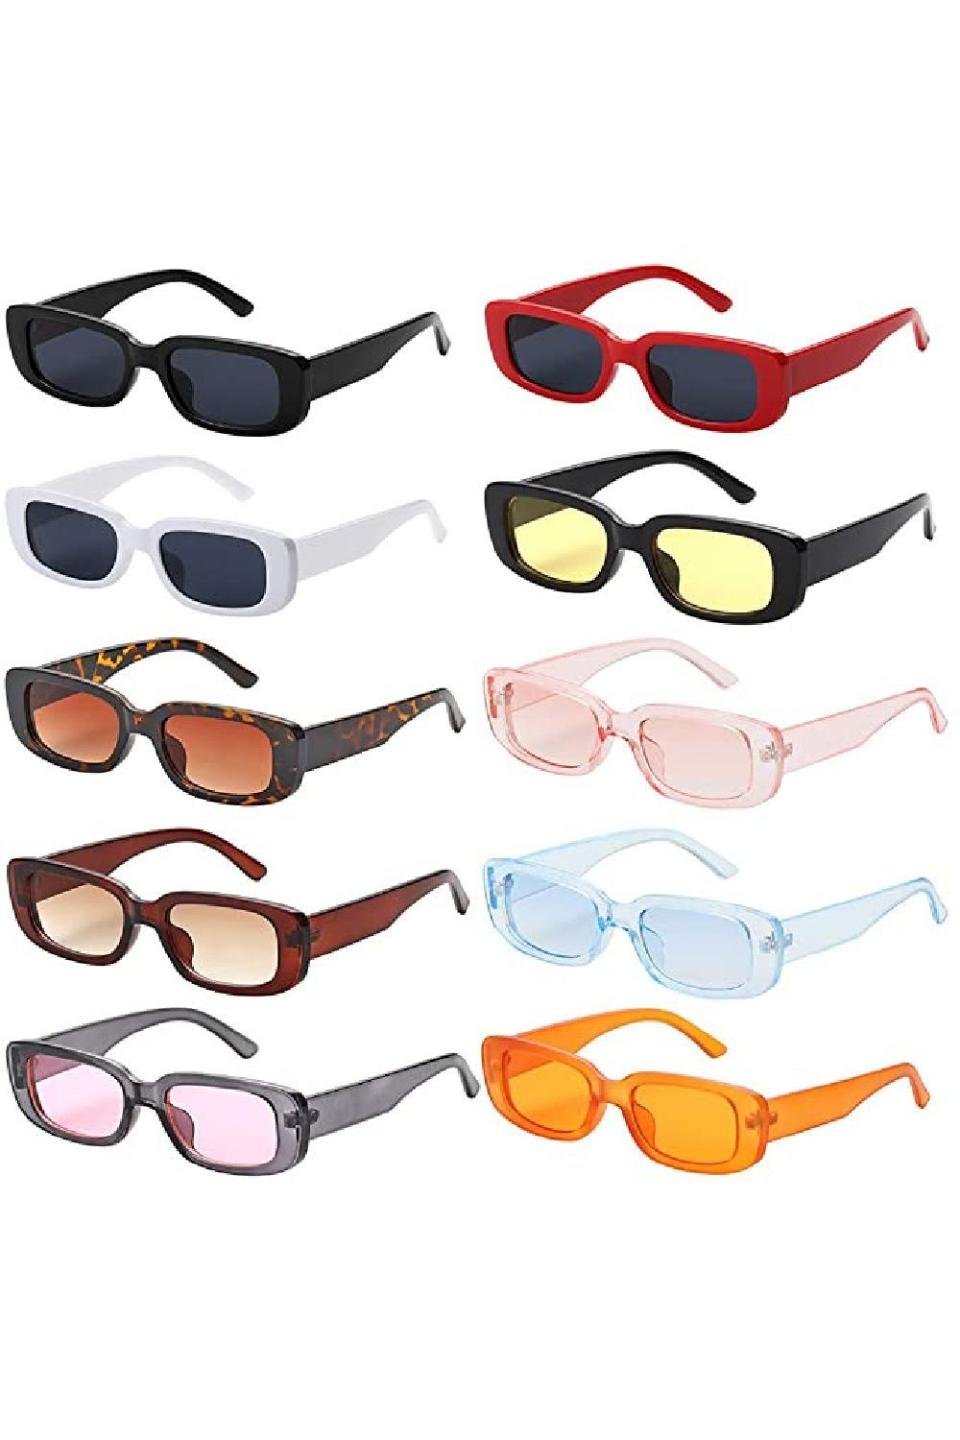 31) Women Small Square Sunglasses